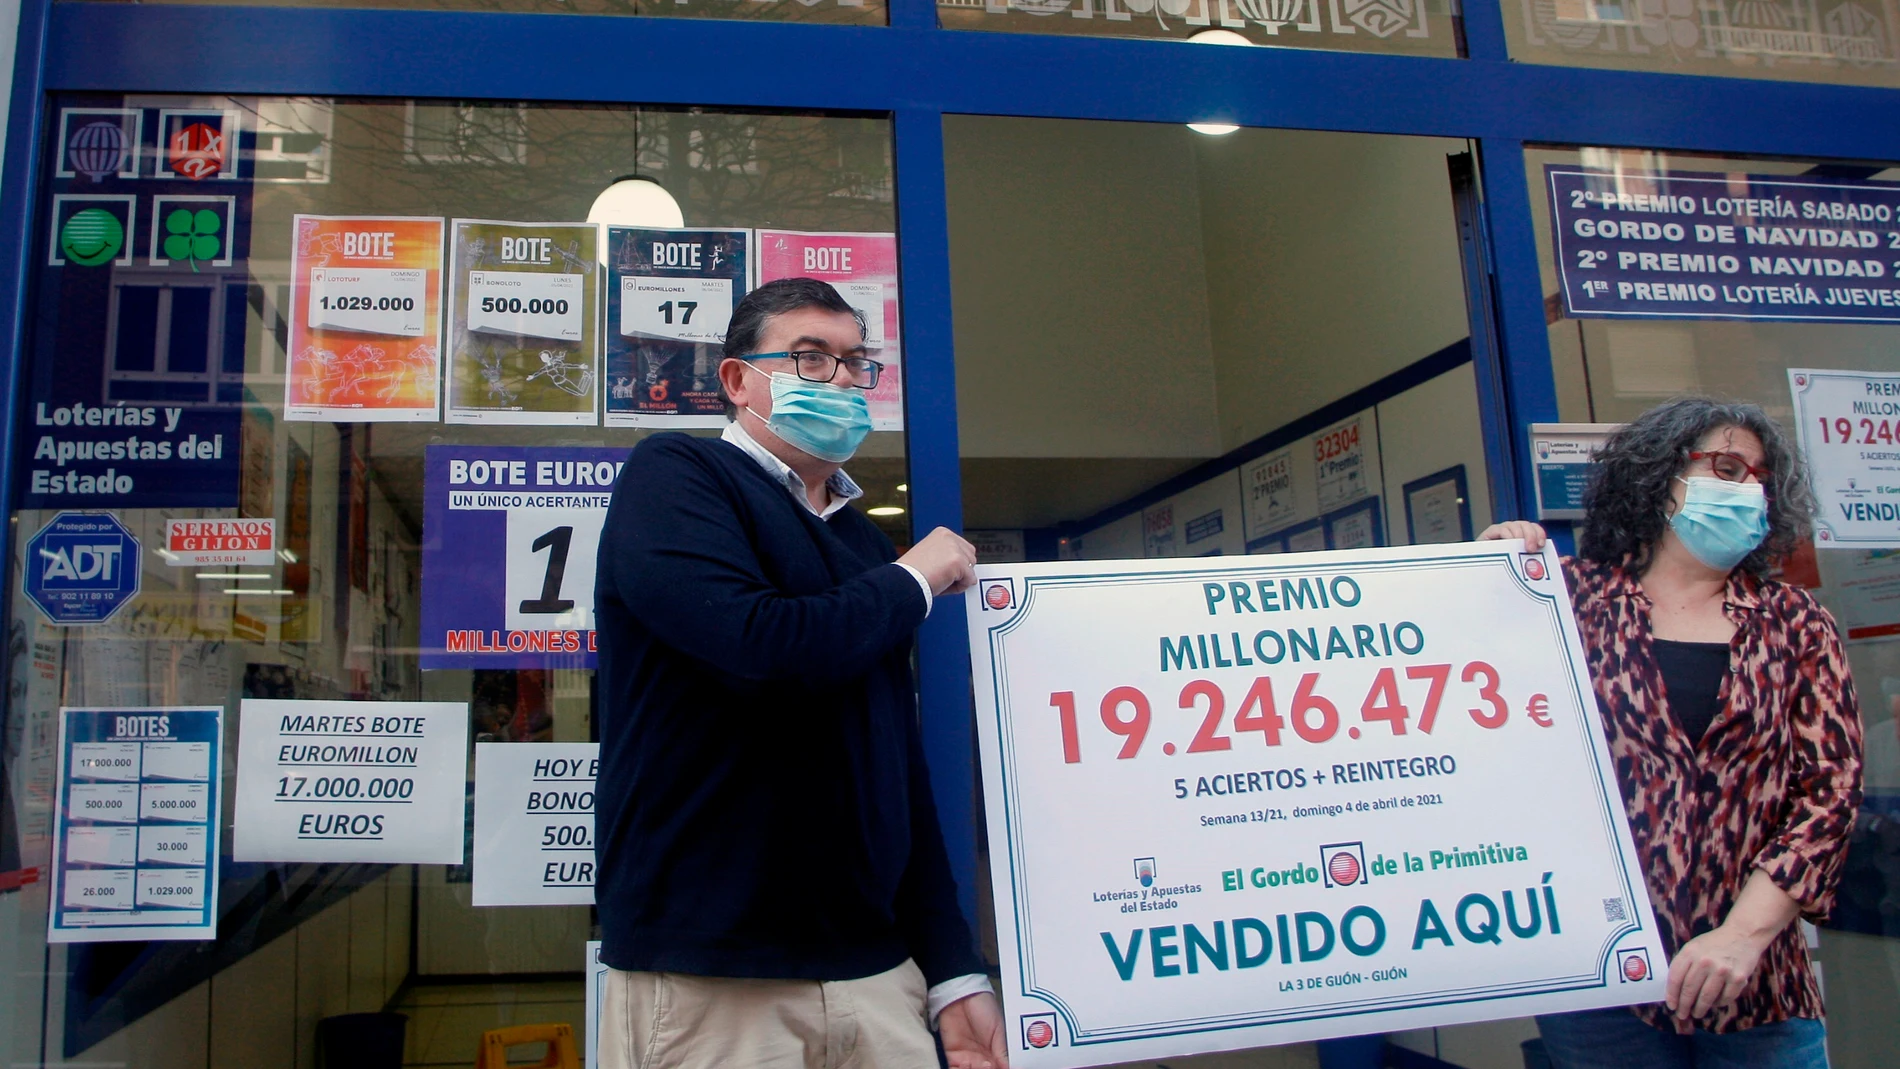 El Gordo de la Primitiva: Un acertante anónimo sella en Asturias un boleto premiado con 19,2 millones de euros